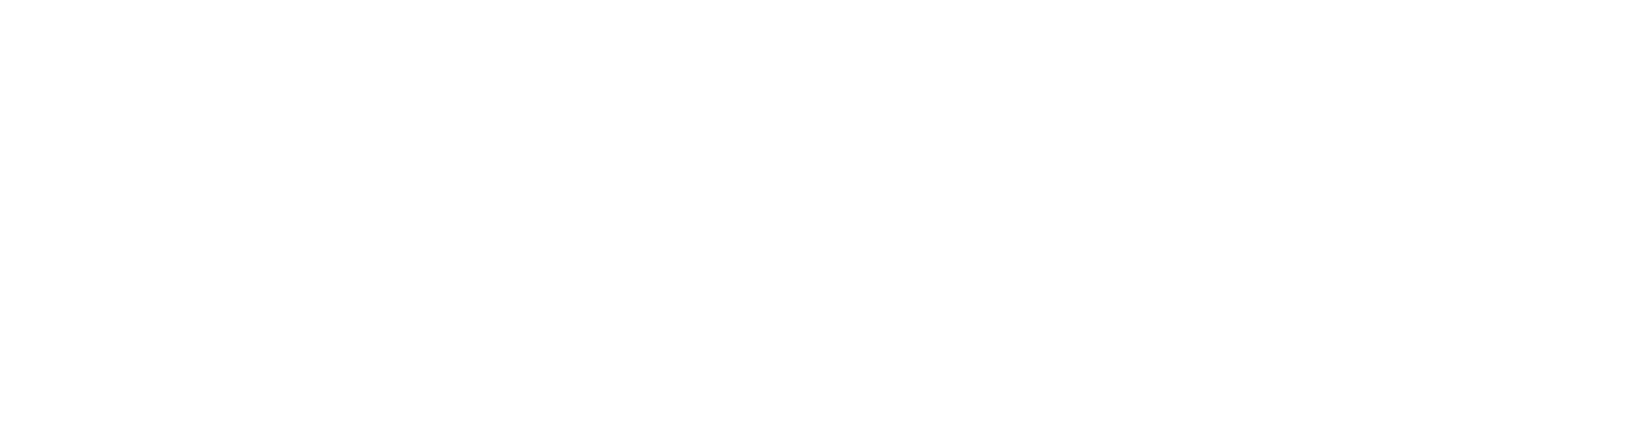 Pivotal_Logo_white